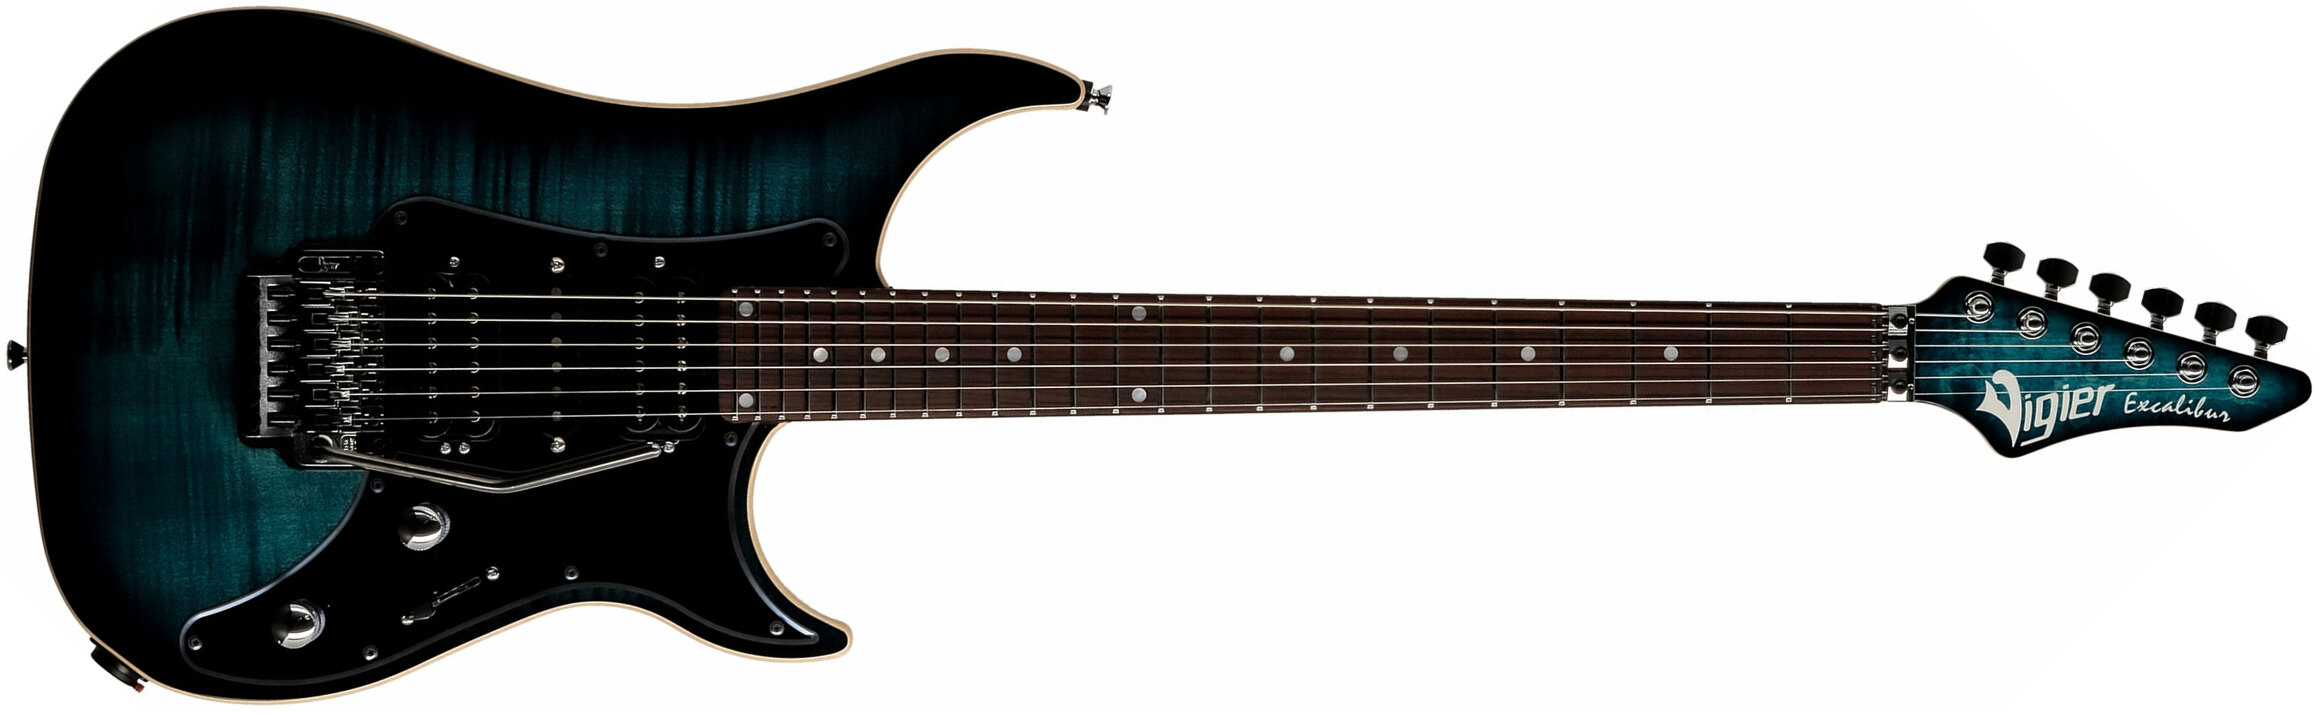 Vigier Excalibur Custom Hsh Fr Rw - Mysterious Blue - Str shape electric guitar - Main picture